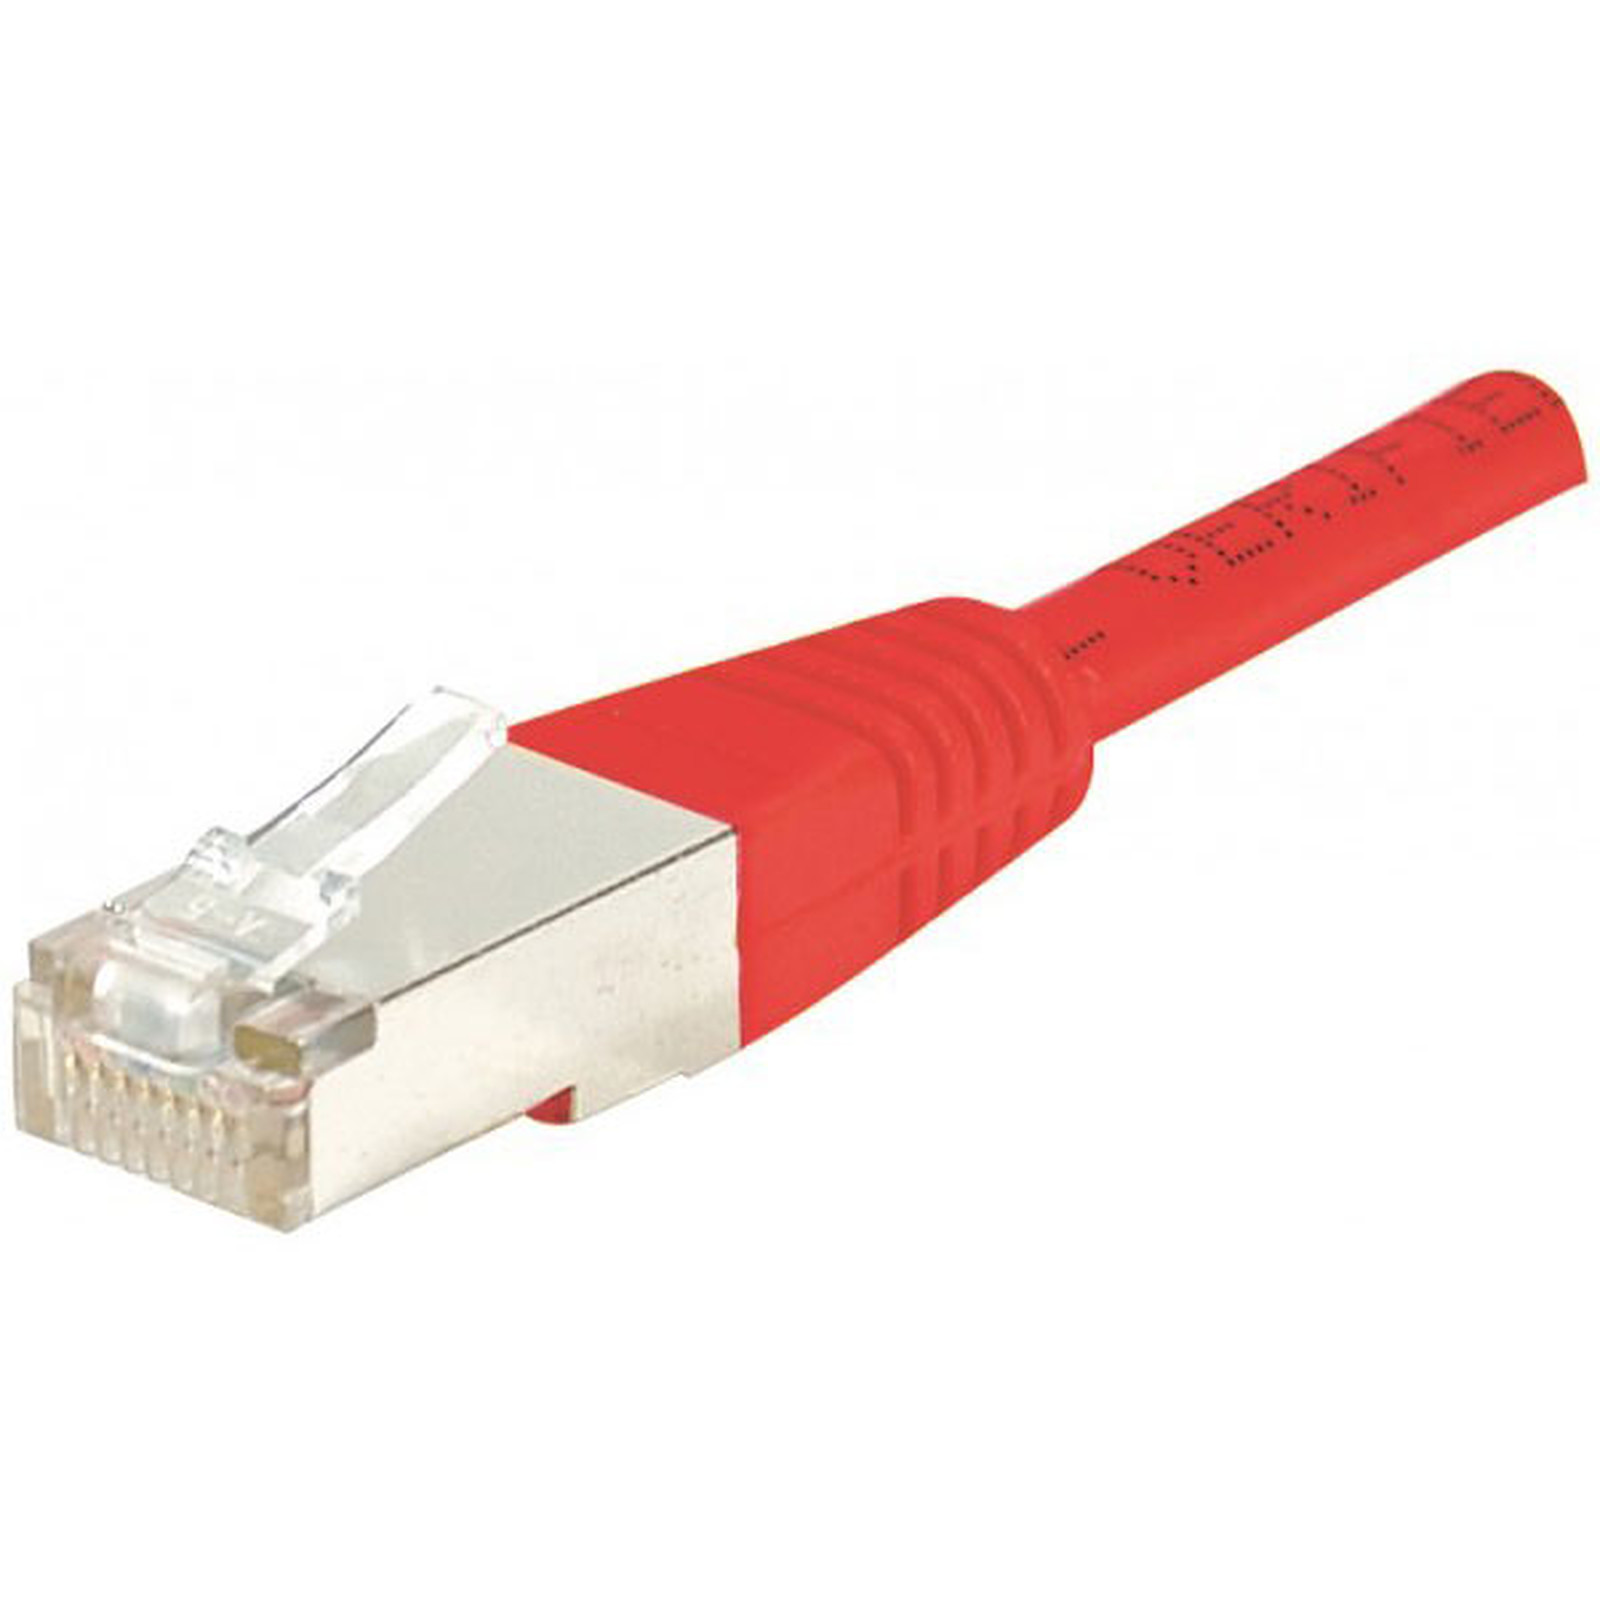 Cable RJ45 categorie 5e F/UTP 10 m (Rouge) - Cable RJ45 Generique